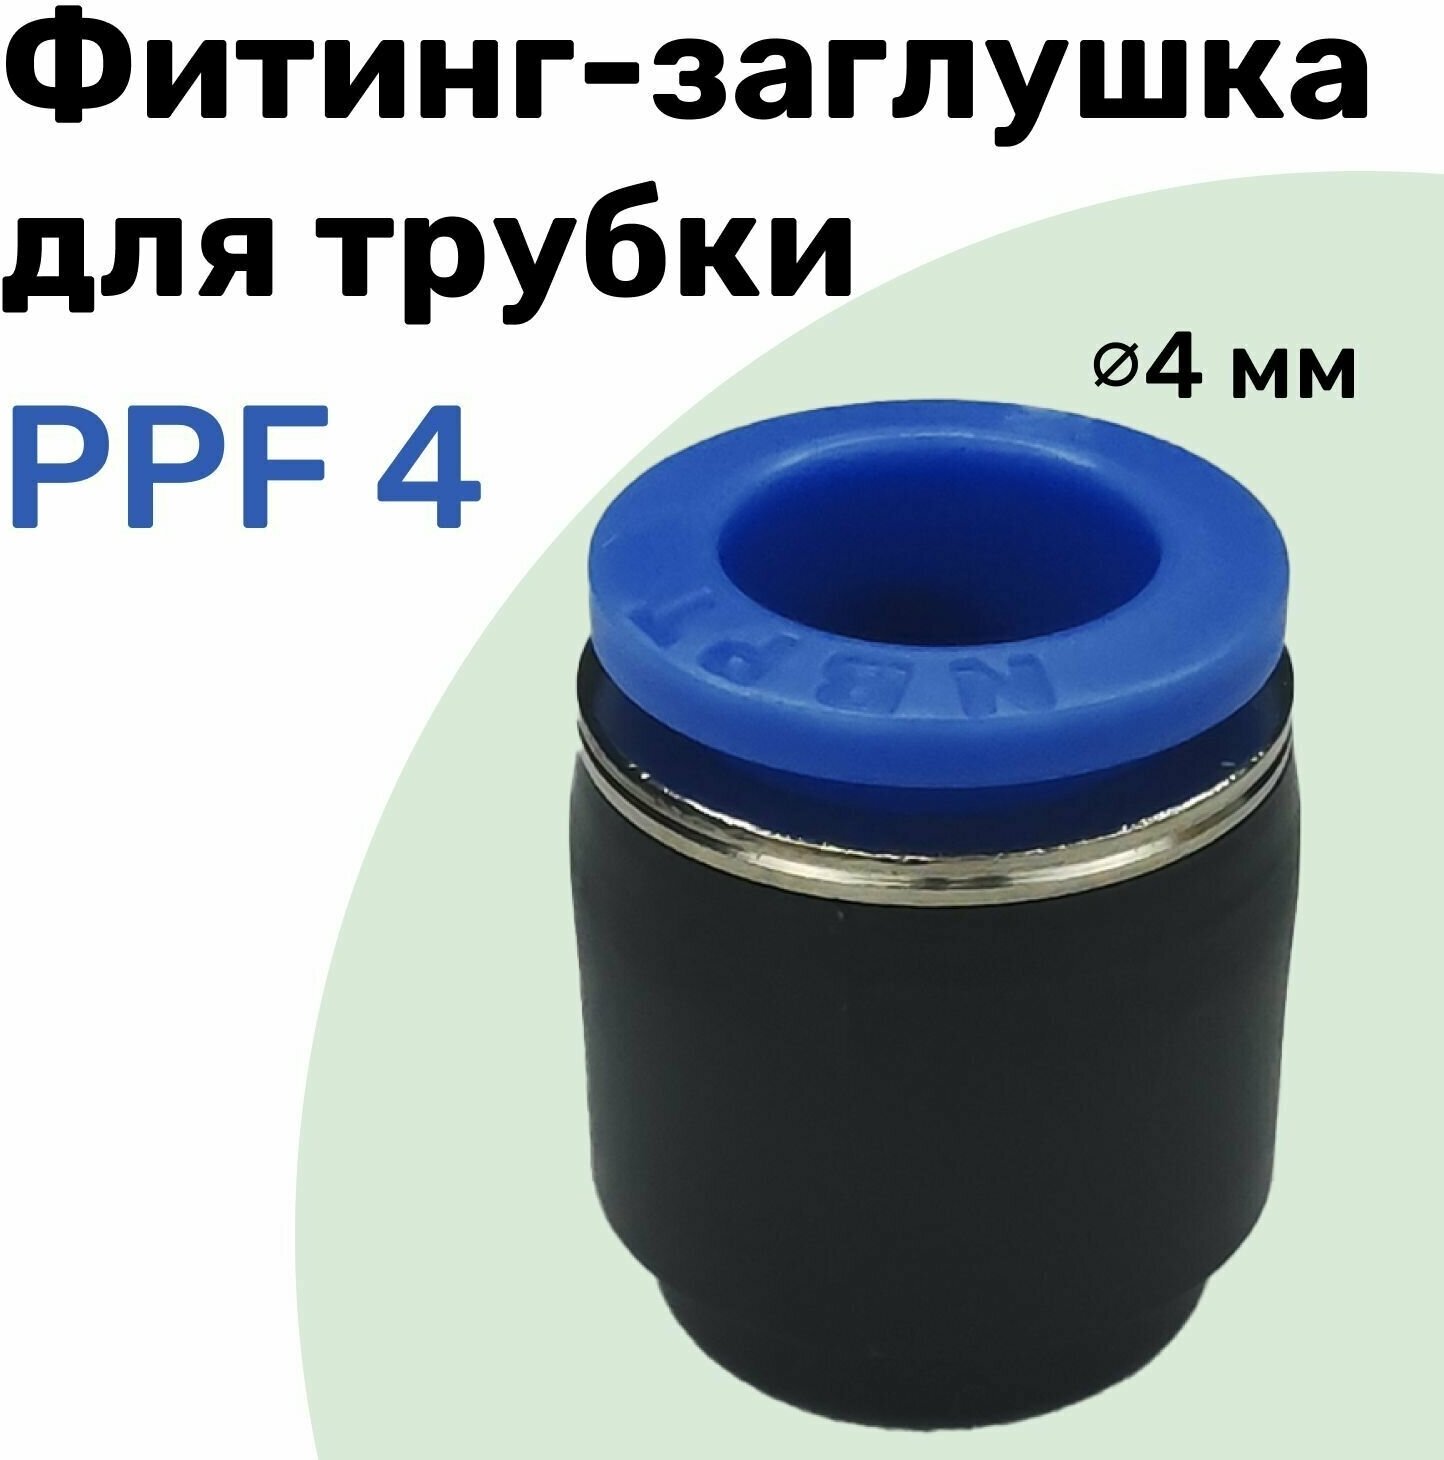 Заглушка для пневматической трубки PPF 4 мм NBPT